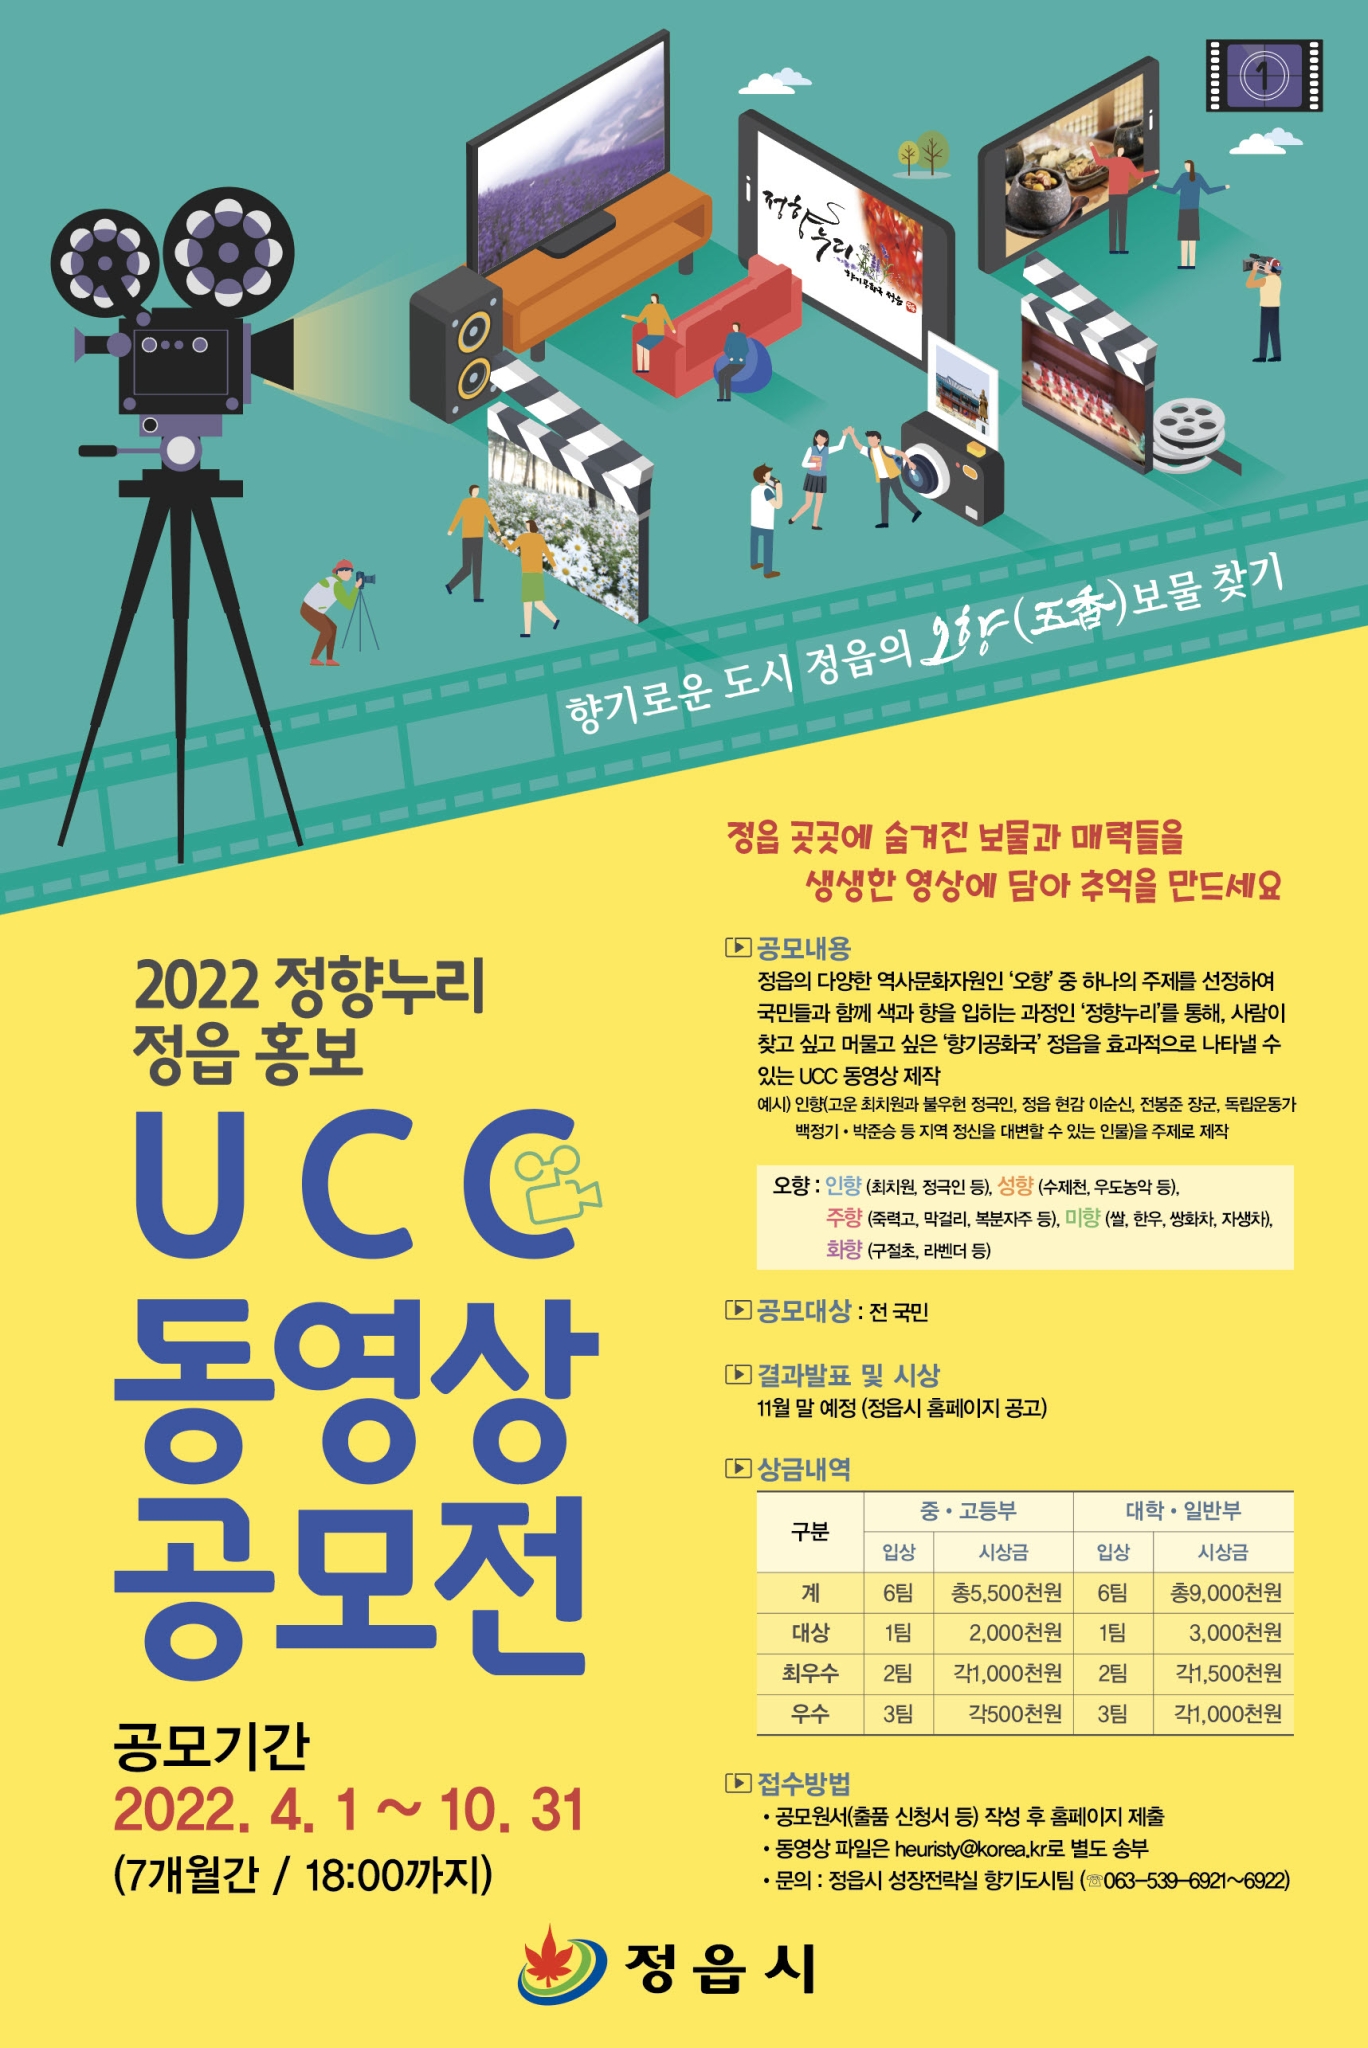 정읍시 성장전략실_정향누리 정읍 홍보 UCC 공모전 포스터